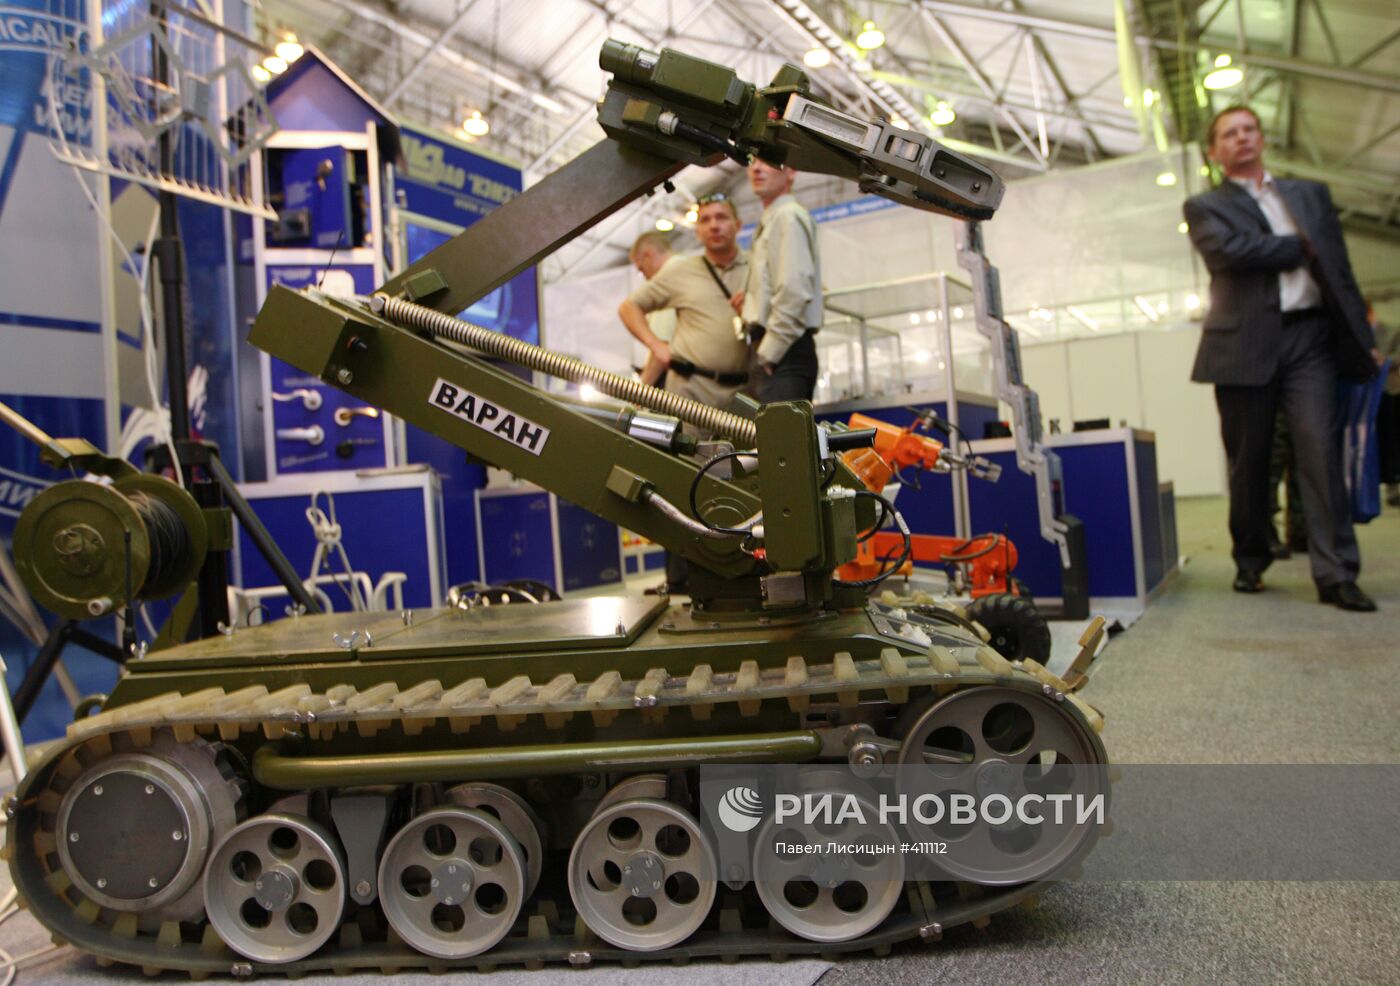 VII Международная выставка вооружений Russian Expo Arms-2009